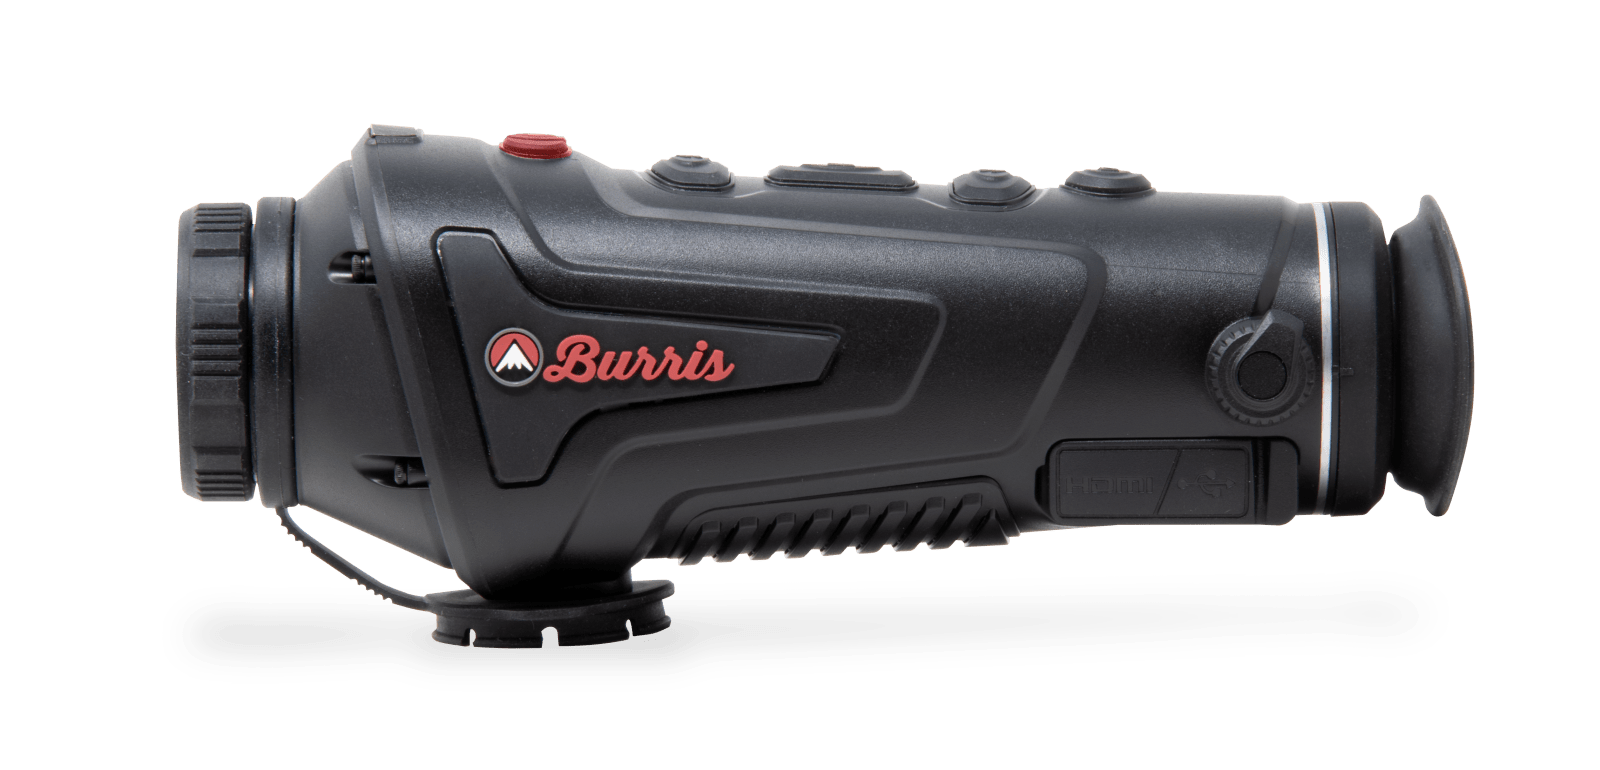 Burris Thermal Handheld H25